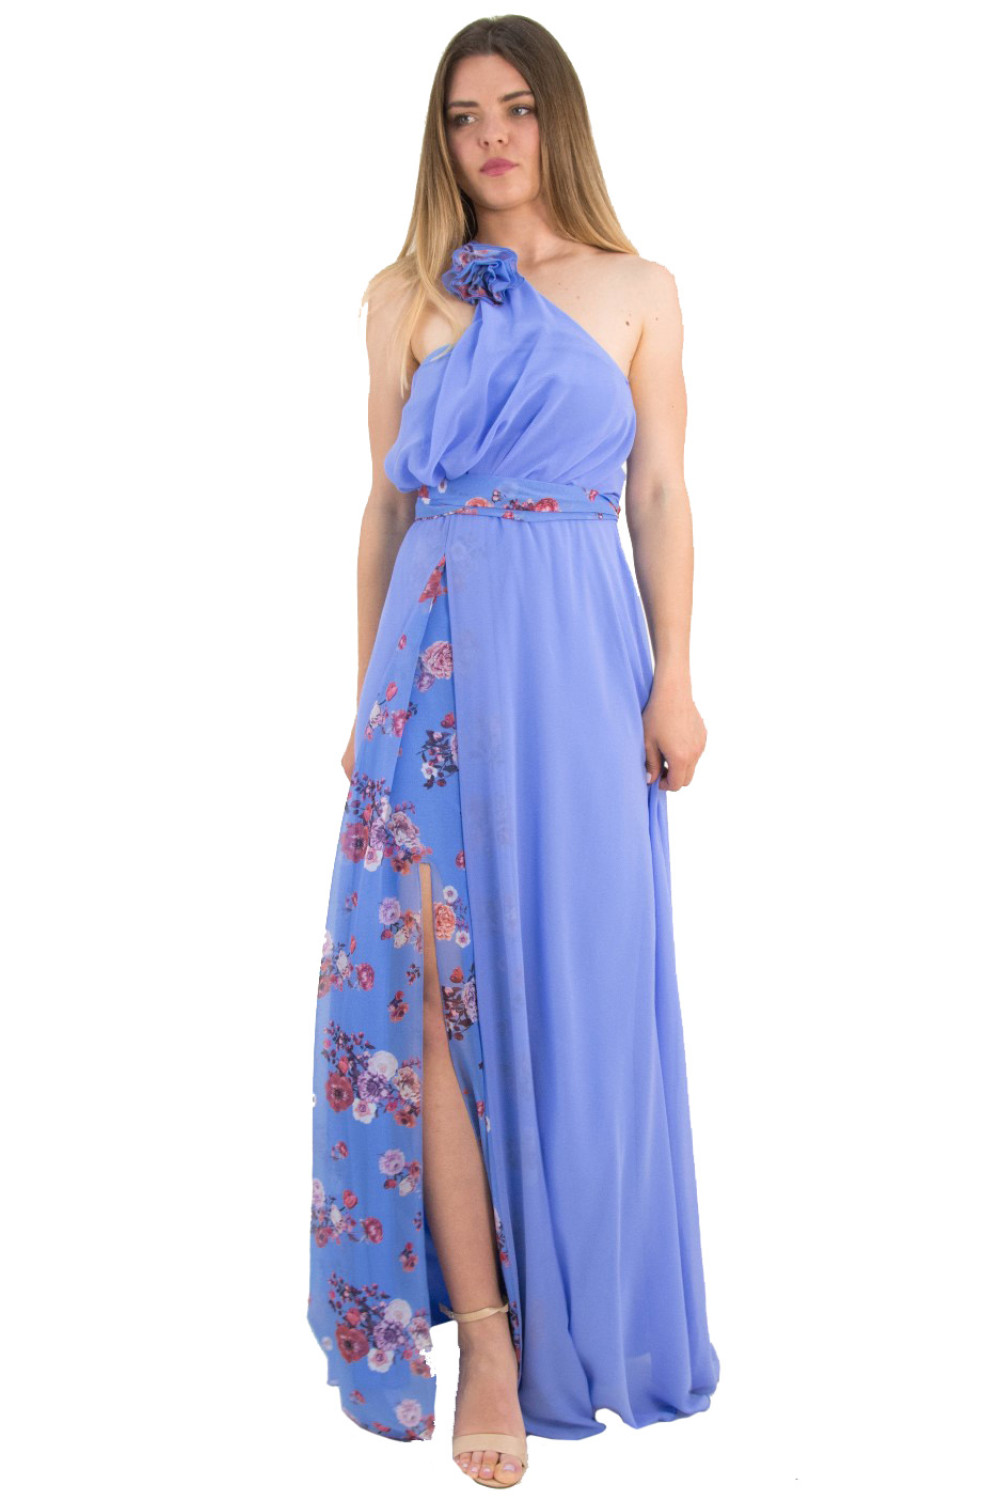 Γυναικείο γαλάζιο maxi φόρεμα γάμου φλοράλ No Stress 8587317W